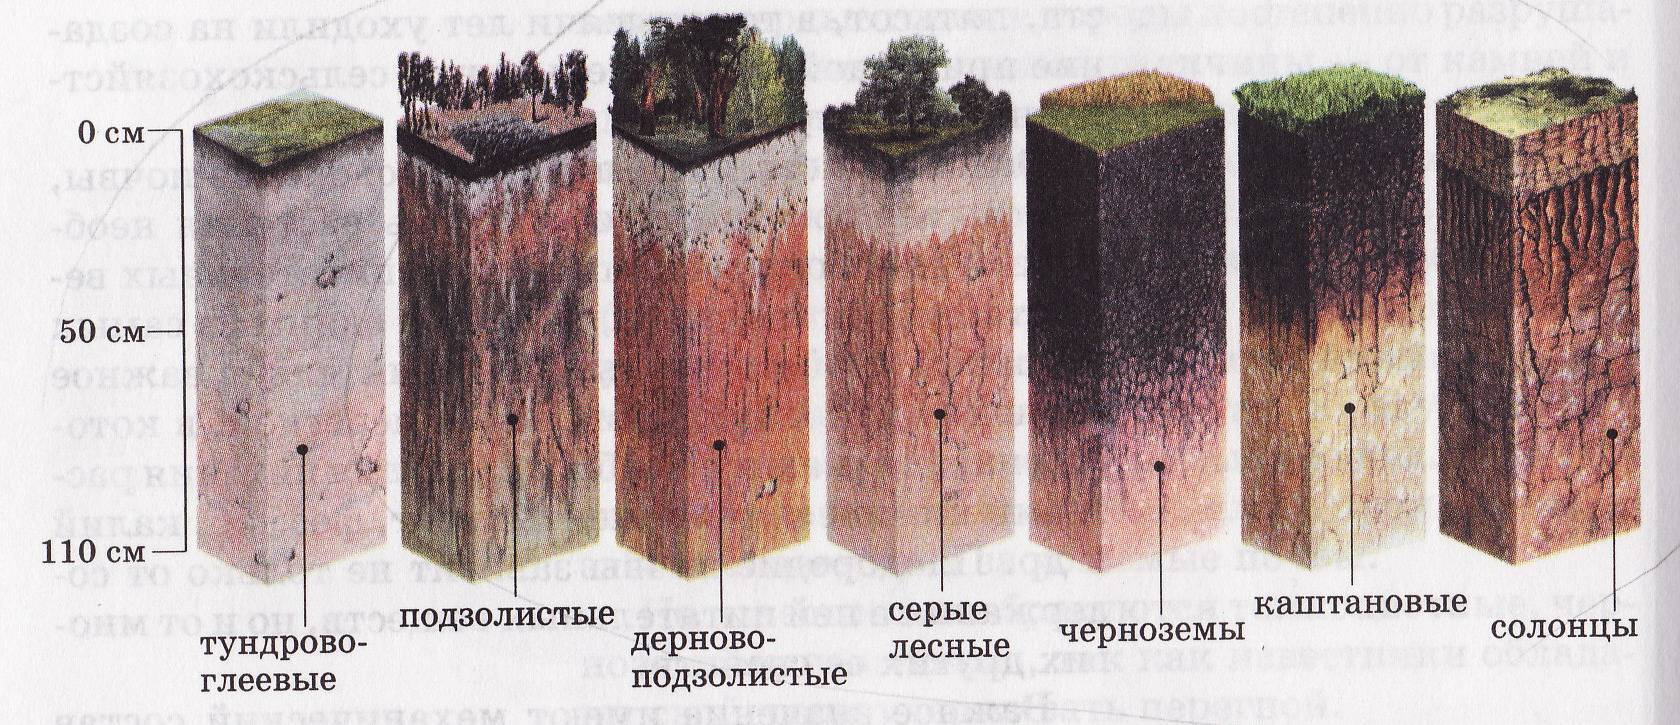 Дерново подзолистые почвы территория. Дерново-подзолистая, серая Лесная, чернозем почвенные горизонты. Подзолистая почва профиль почвы. Пахотные дерново-подзолистые почвы профиль. Почвенный профиль подзолистых почв.